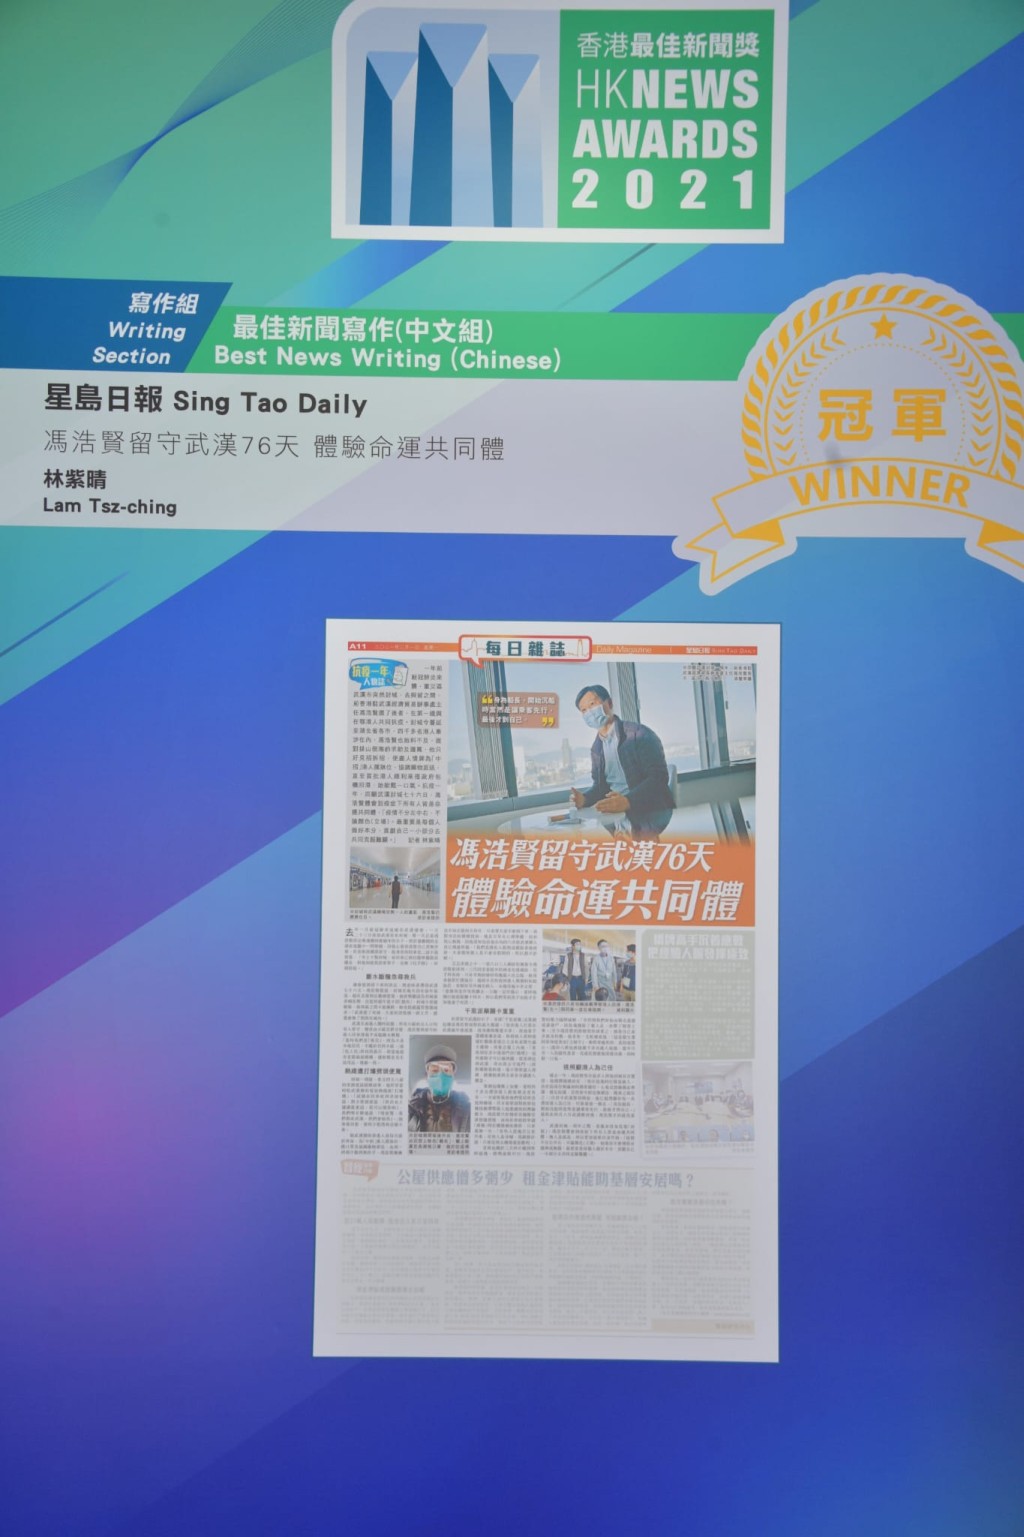 《星岛日报》凭 《冯浩贤留守武汉76天 体验命运共同体》夺最佳新闻写作(中文组)冠军。